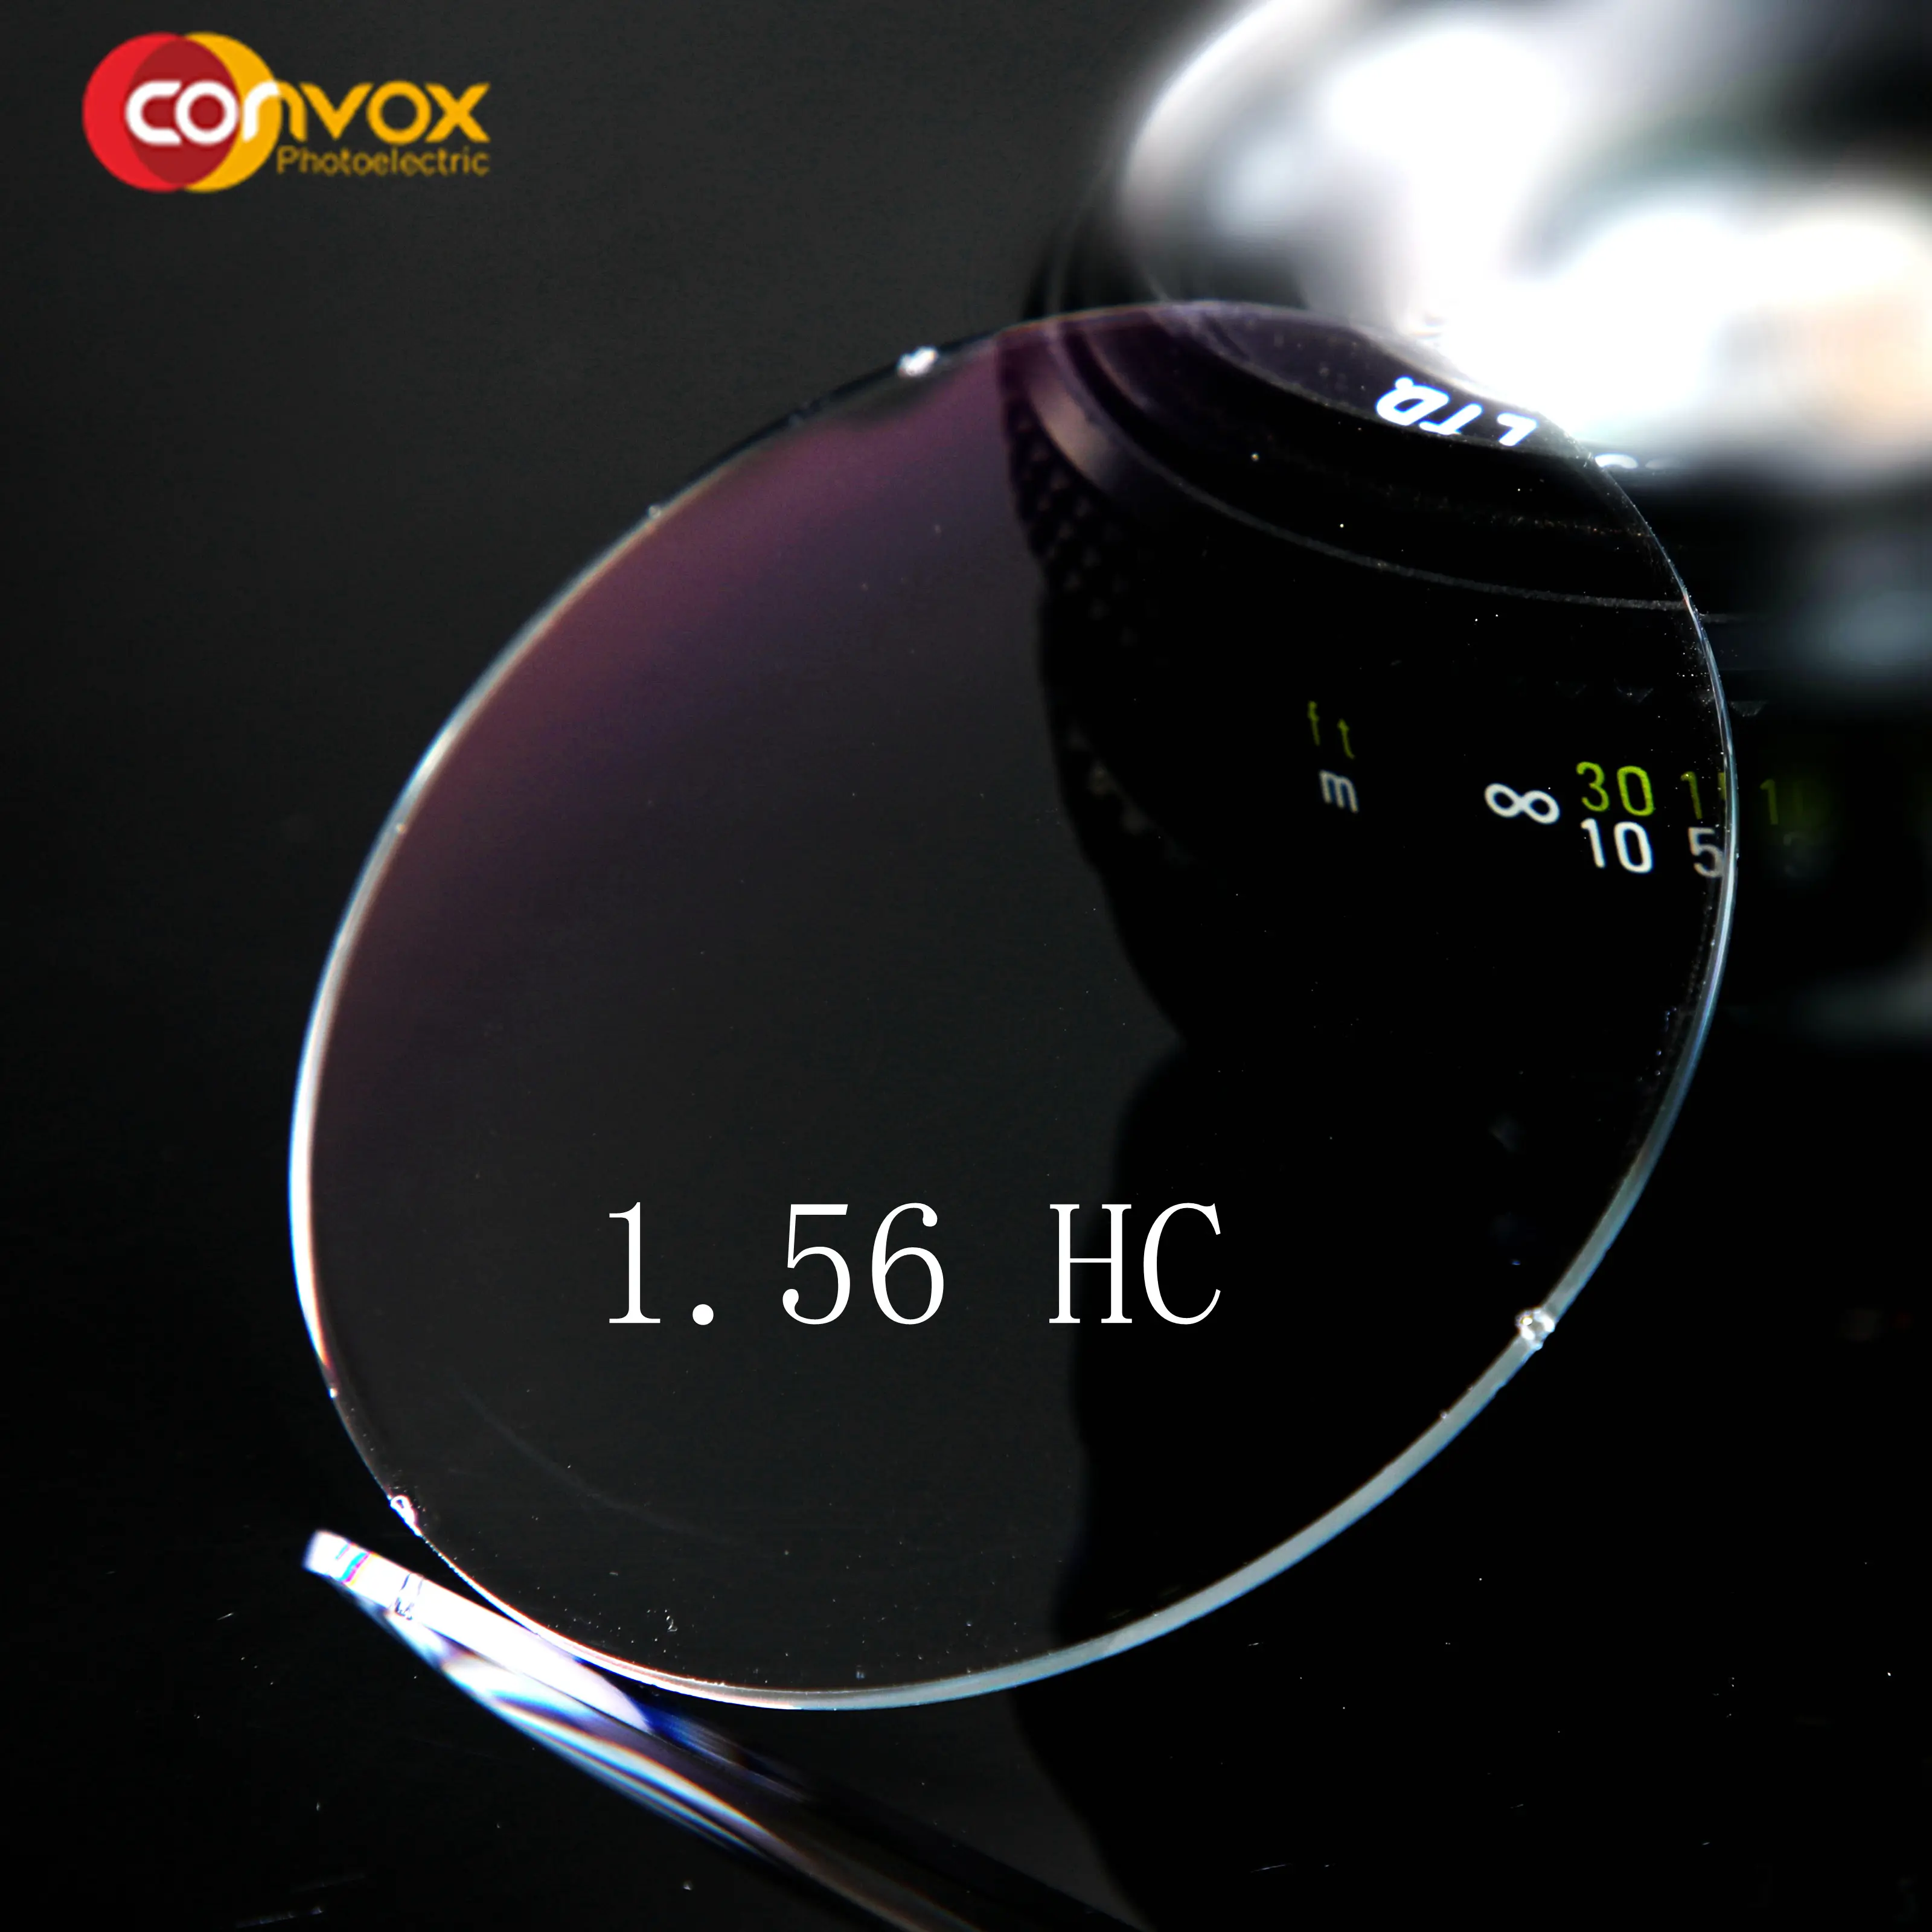 Convoxクラシックcrハードコート1.56hc光学レンズ